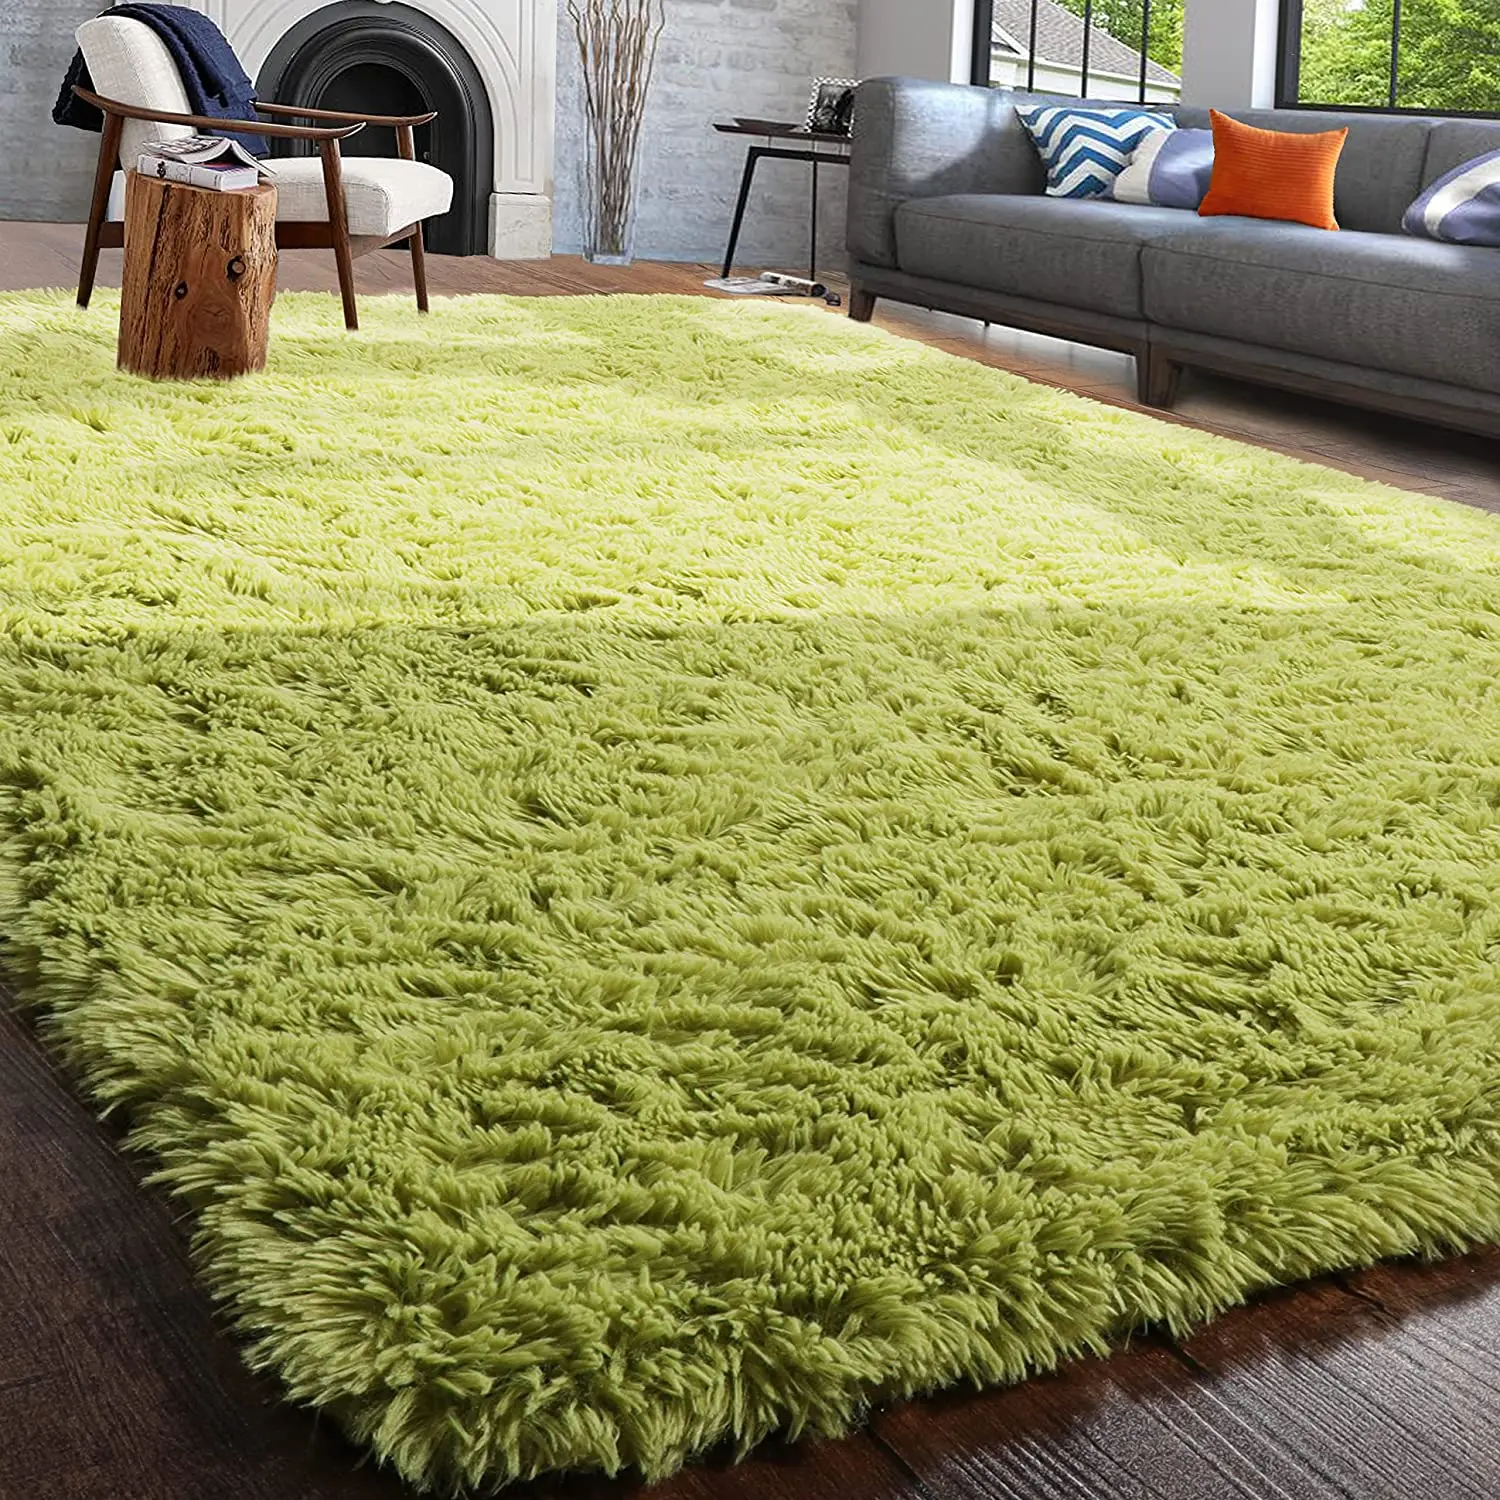 Soffice morbido verde soggiorno tappeto grande Area pelosa tappeti tappetino  per bambini bambini Shaggy camera da letto tappeto per la scuola materna  tappeto - AliExpress